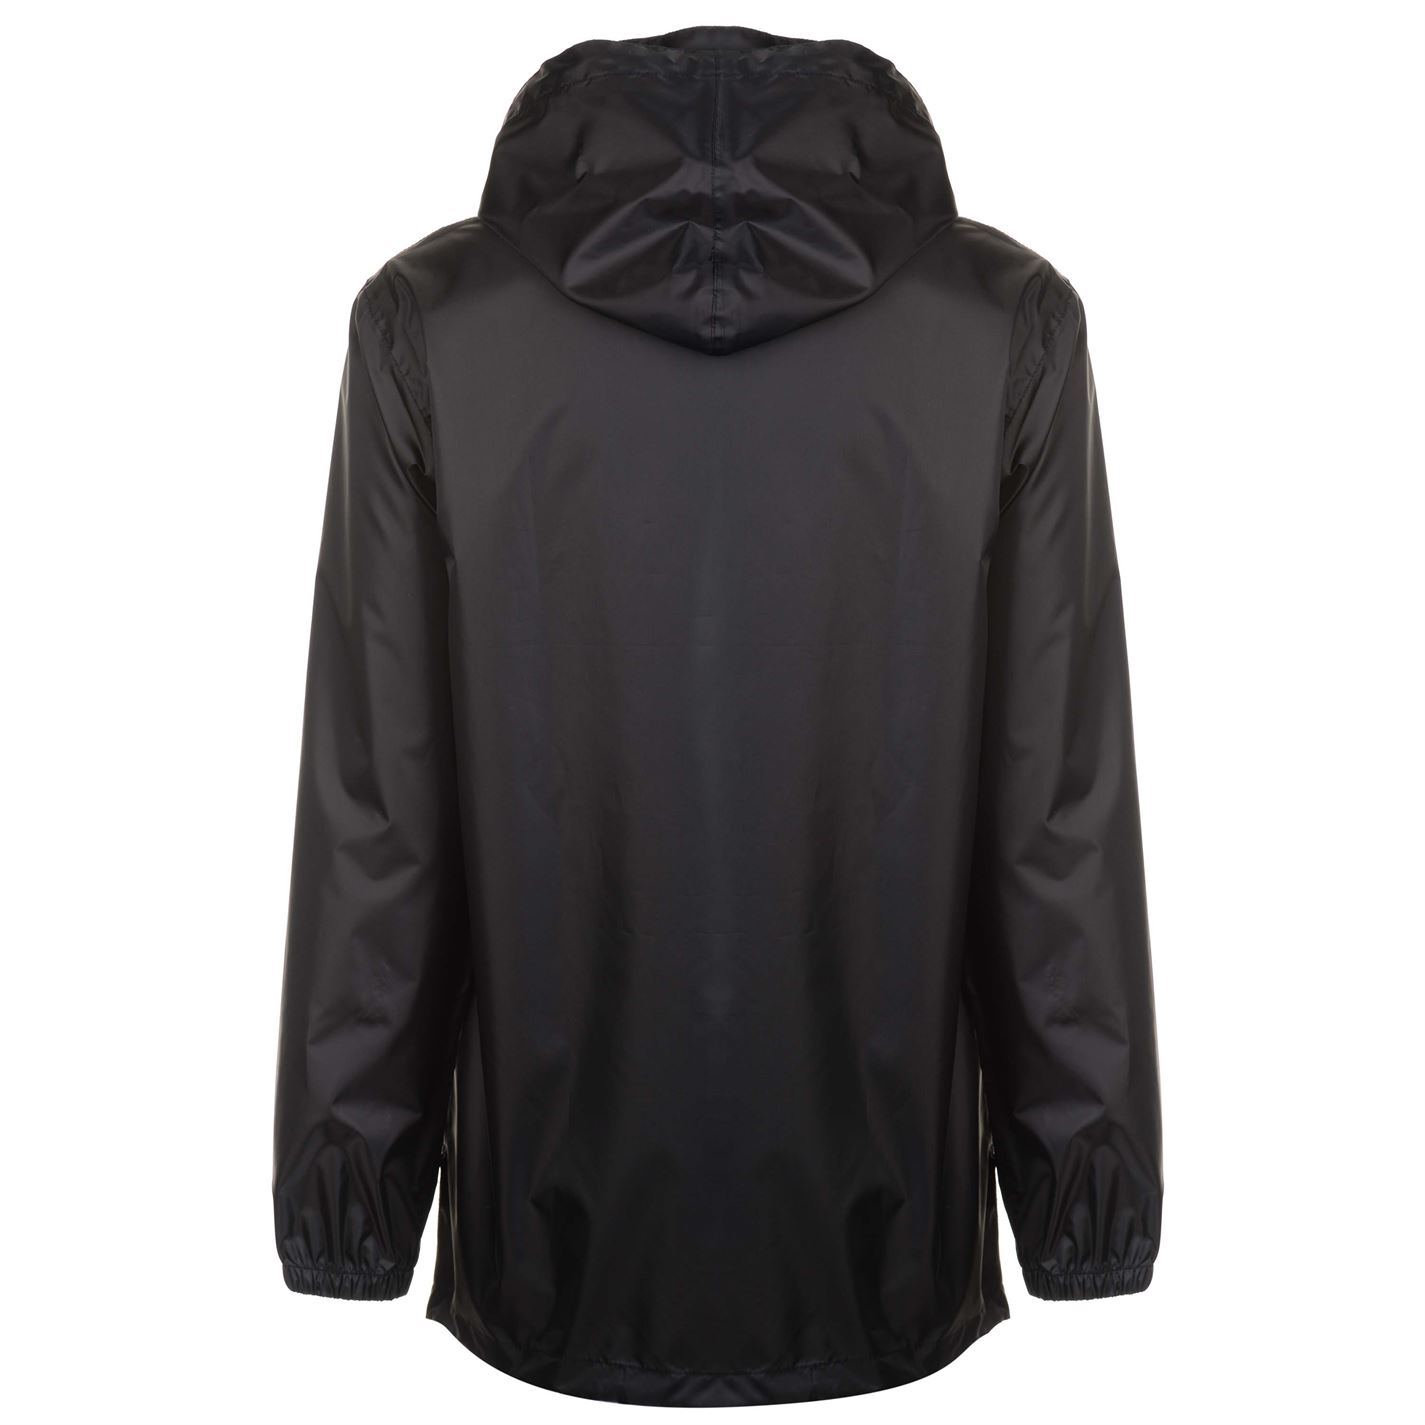 Gelert Mens Packaway Smock Waterproof Jacket Coat Top Breathable Hooded ...